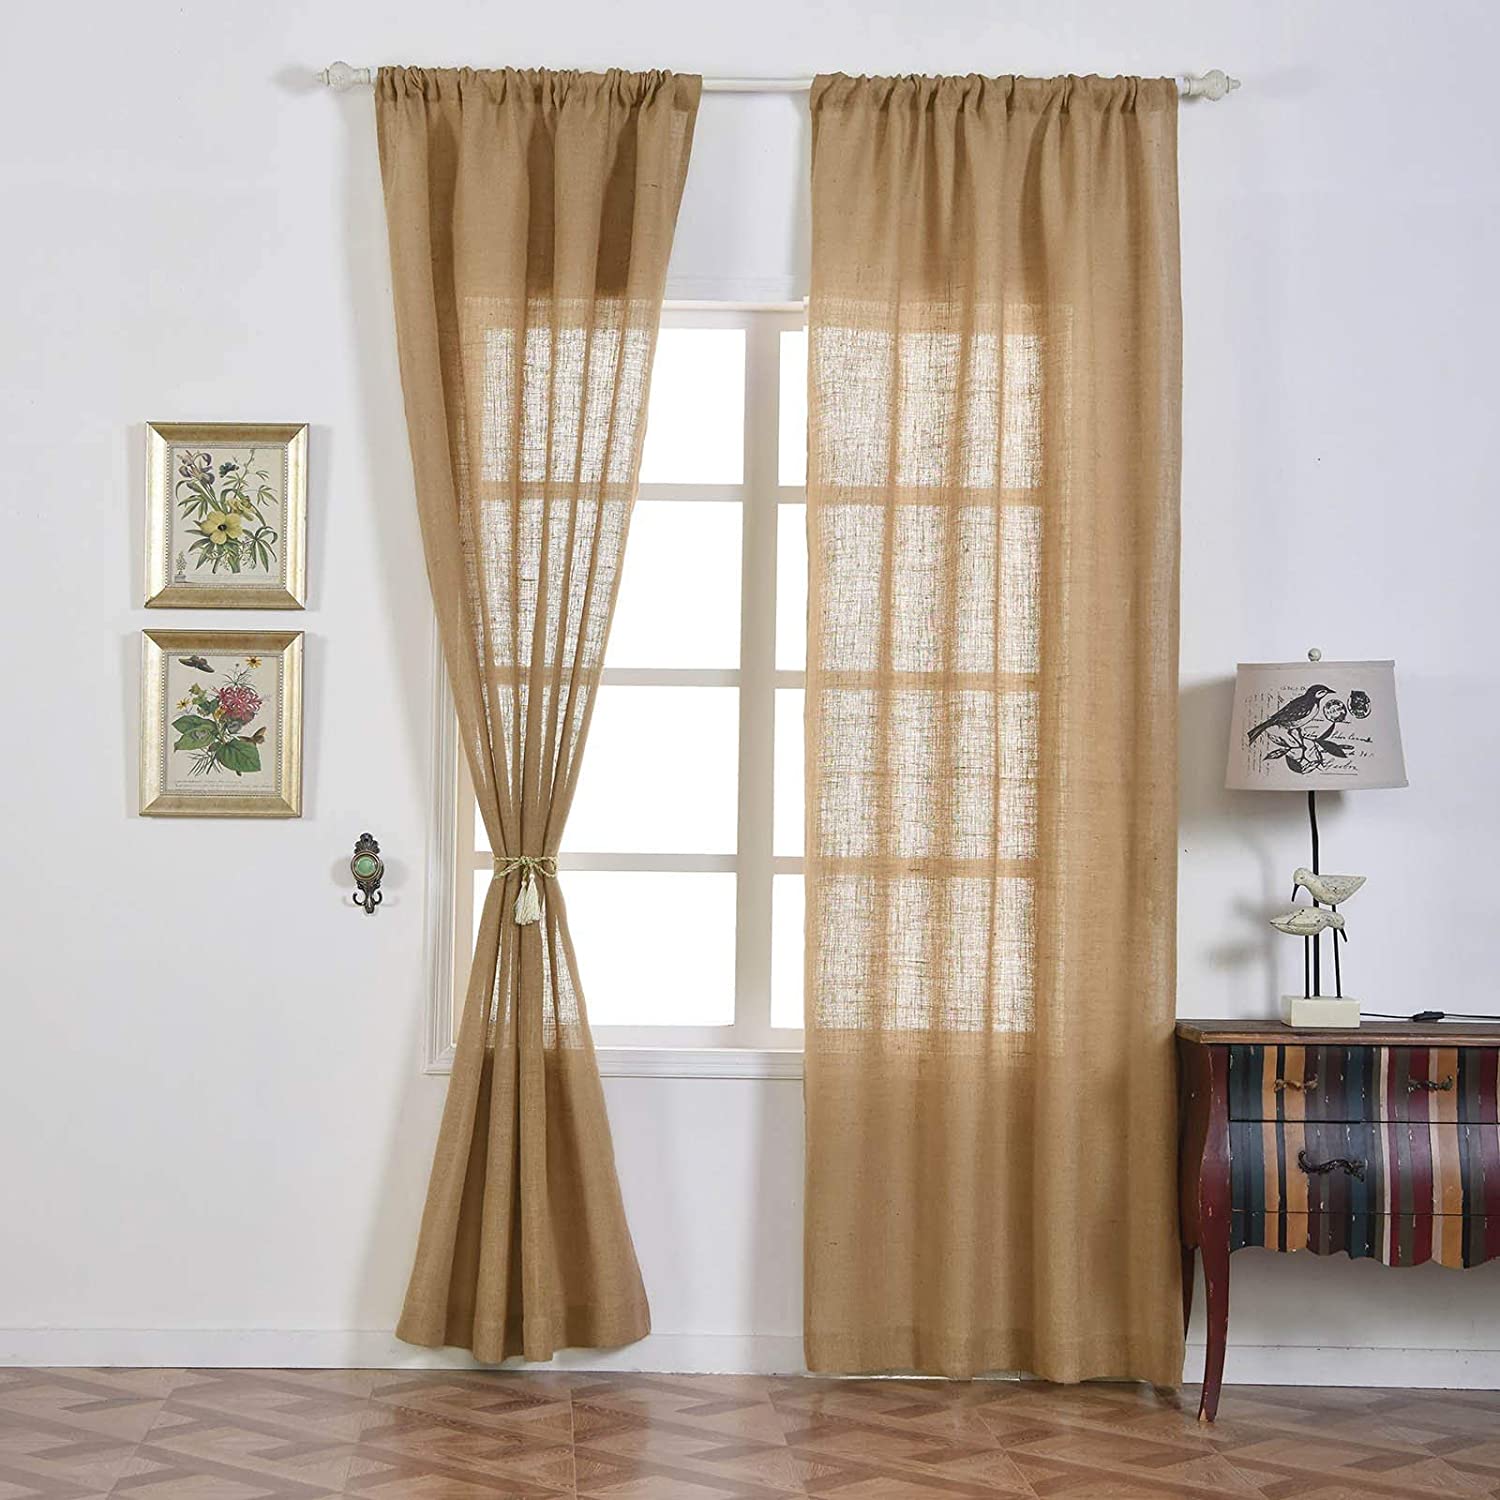 Vải bố có chất liệu dày dặn, độ cản nắng tốt hơn so với các loại vải thông thường nên được ưa chuộng khi thiết kế rèm cửa trang trí phòng.